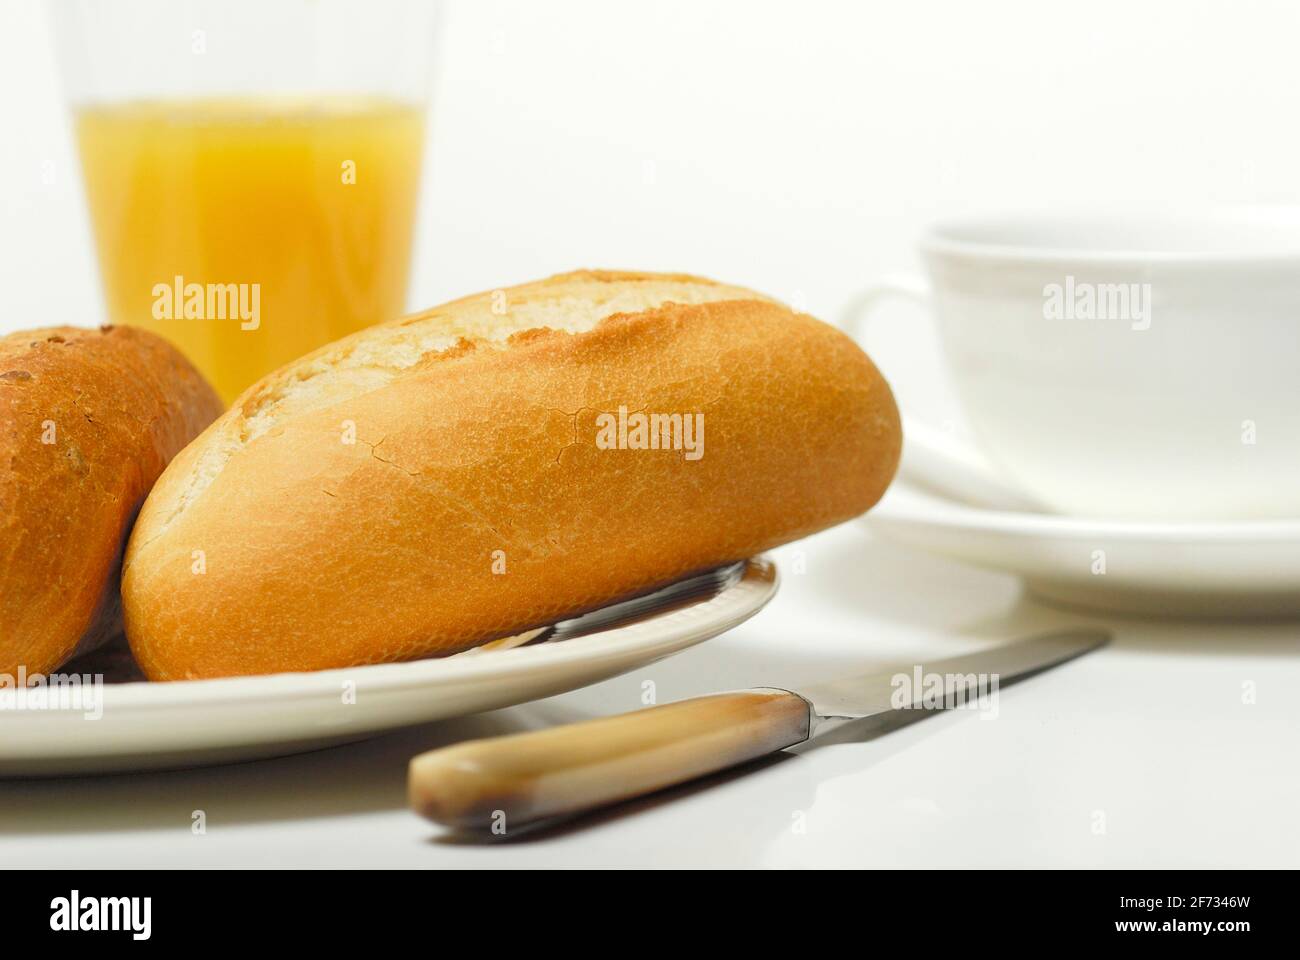 Breakfast, bread roll and orange juice, bread roll, knife Stock Photo